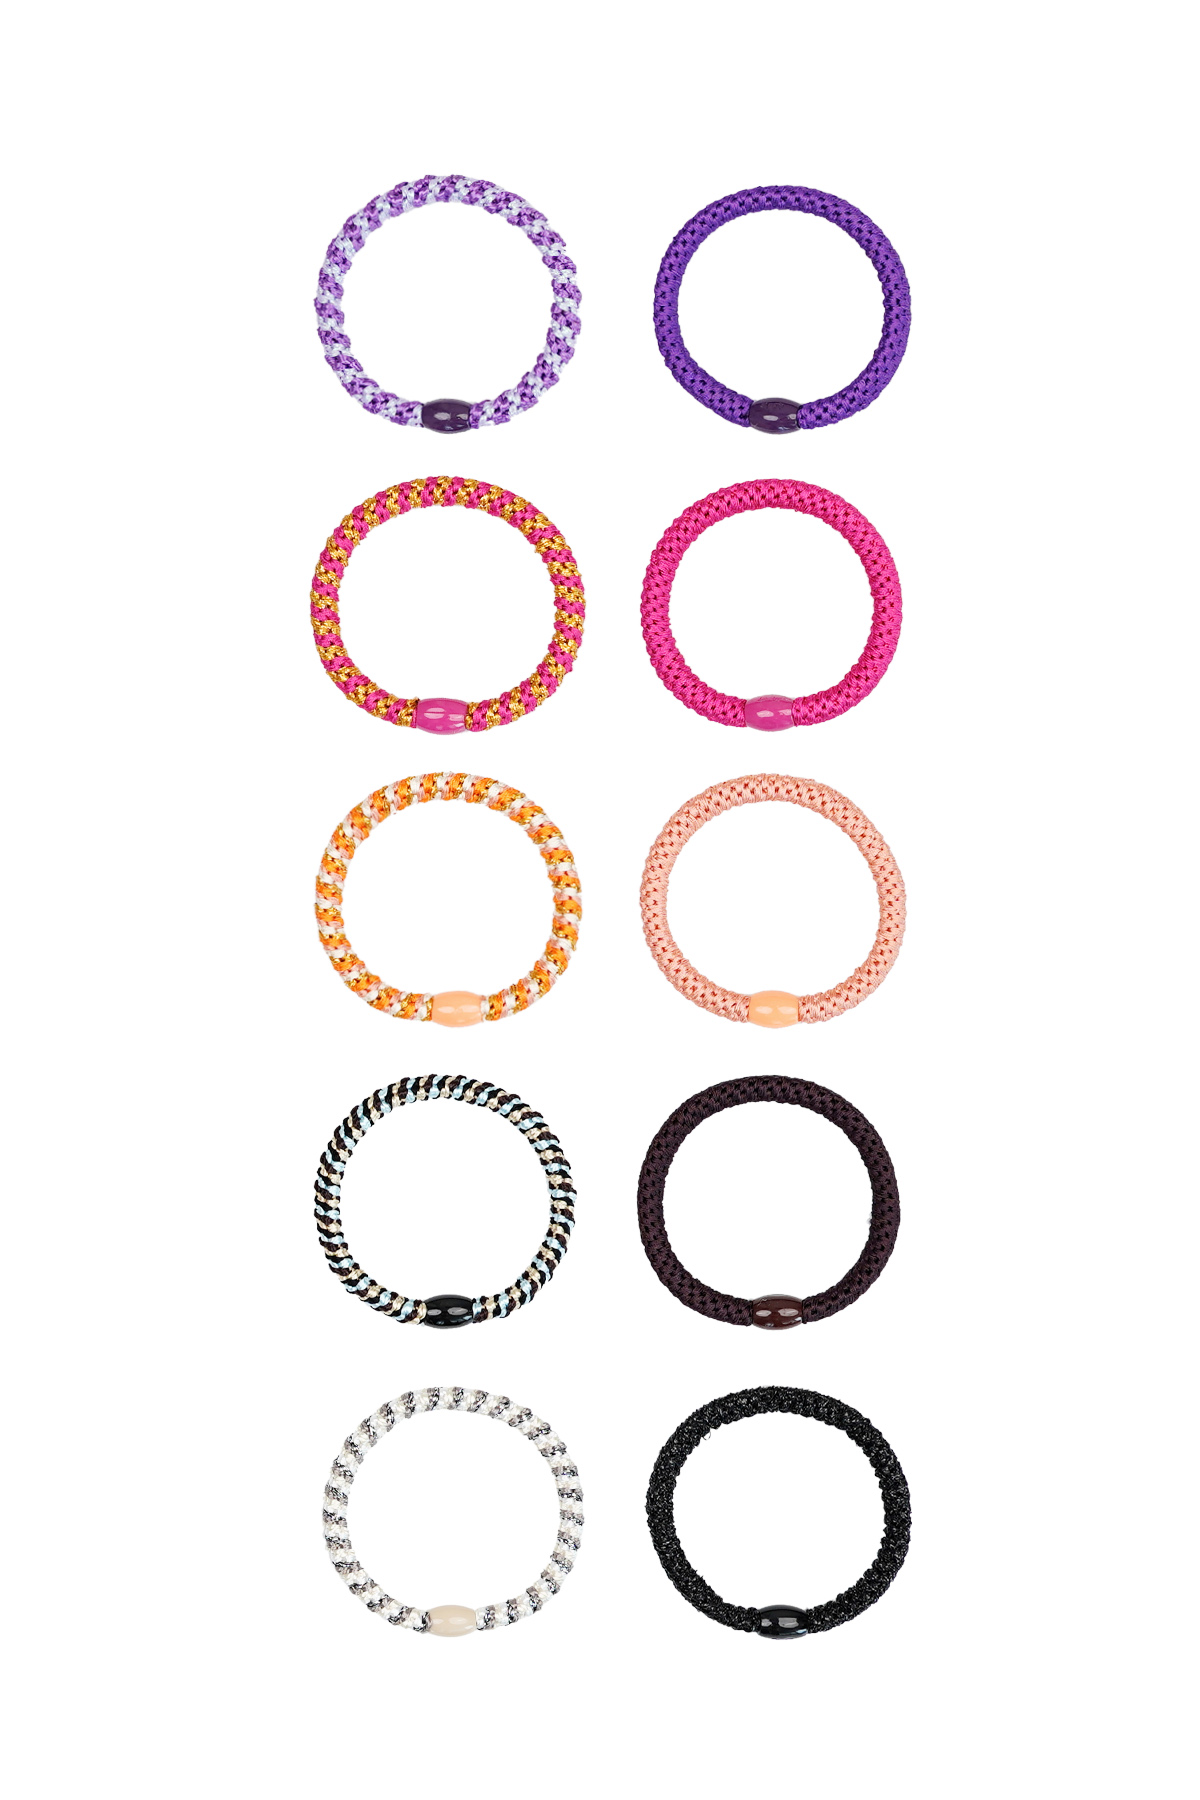 Scatola di braccialetti elastici per capelli basic e colorata - multi h5 